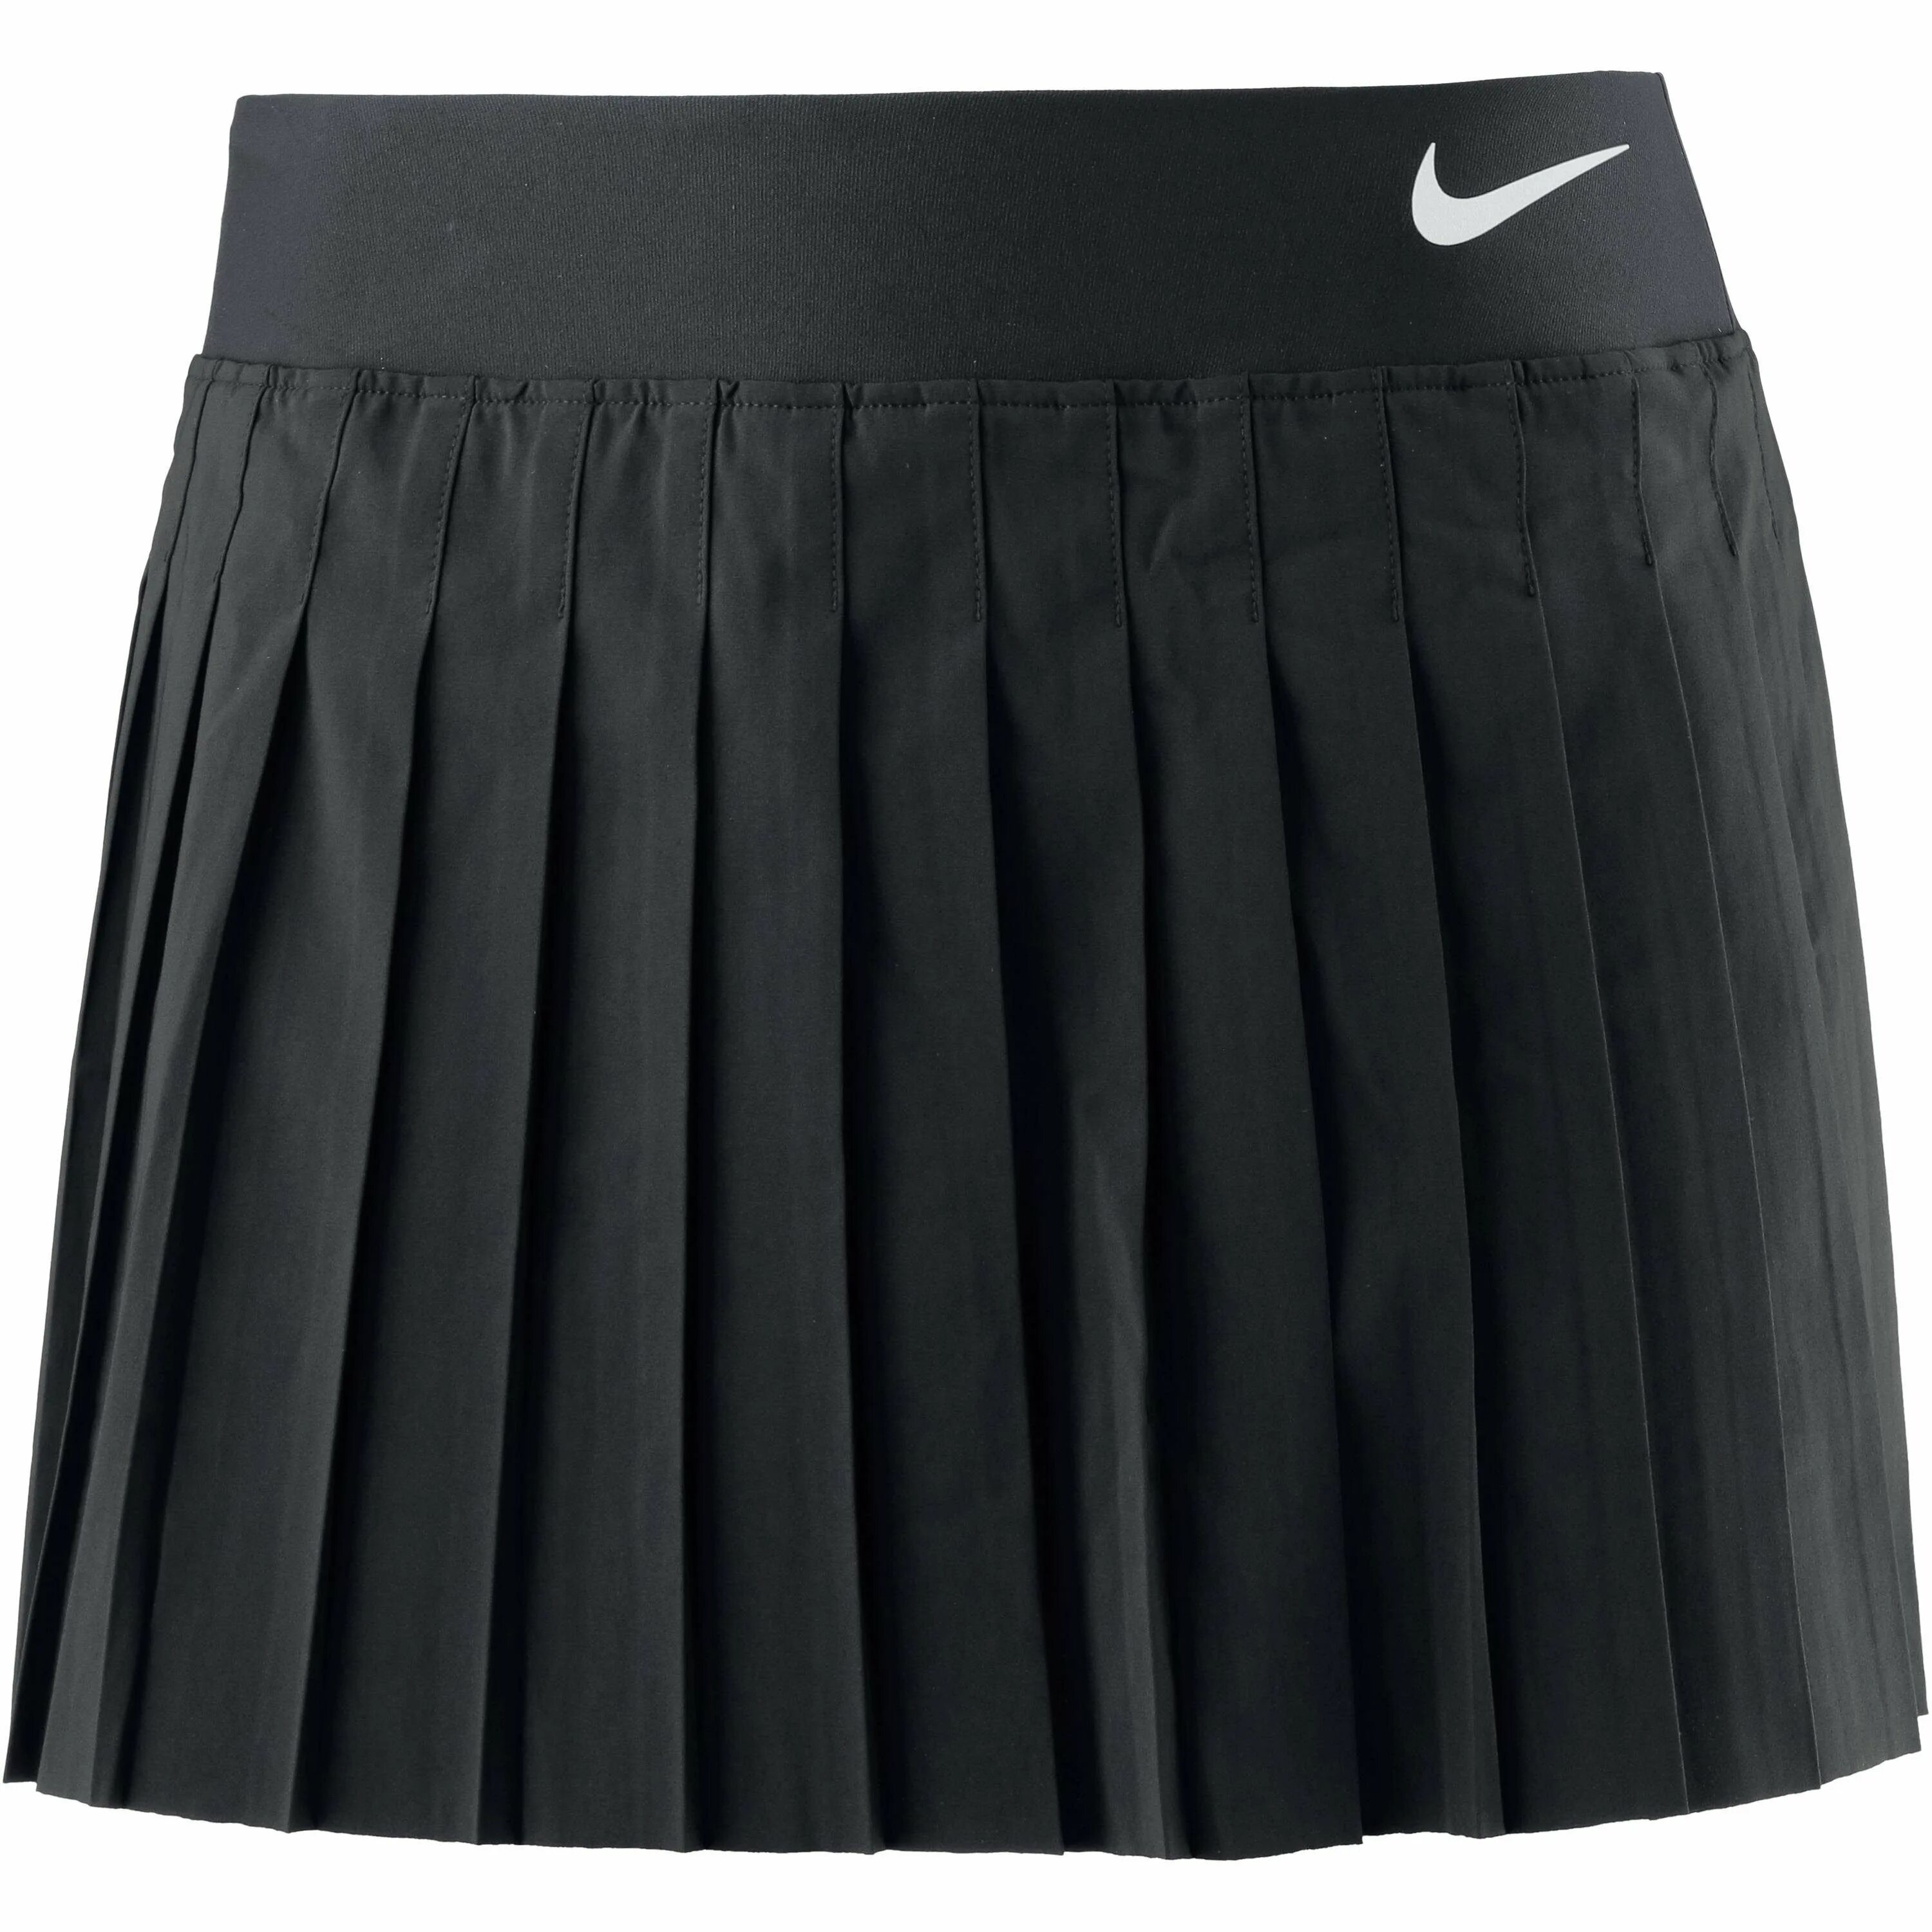 Теннисные юбки в школу